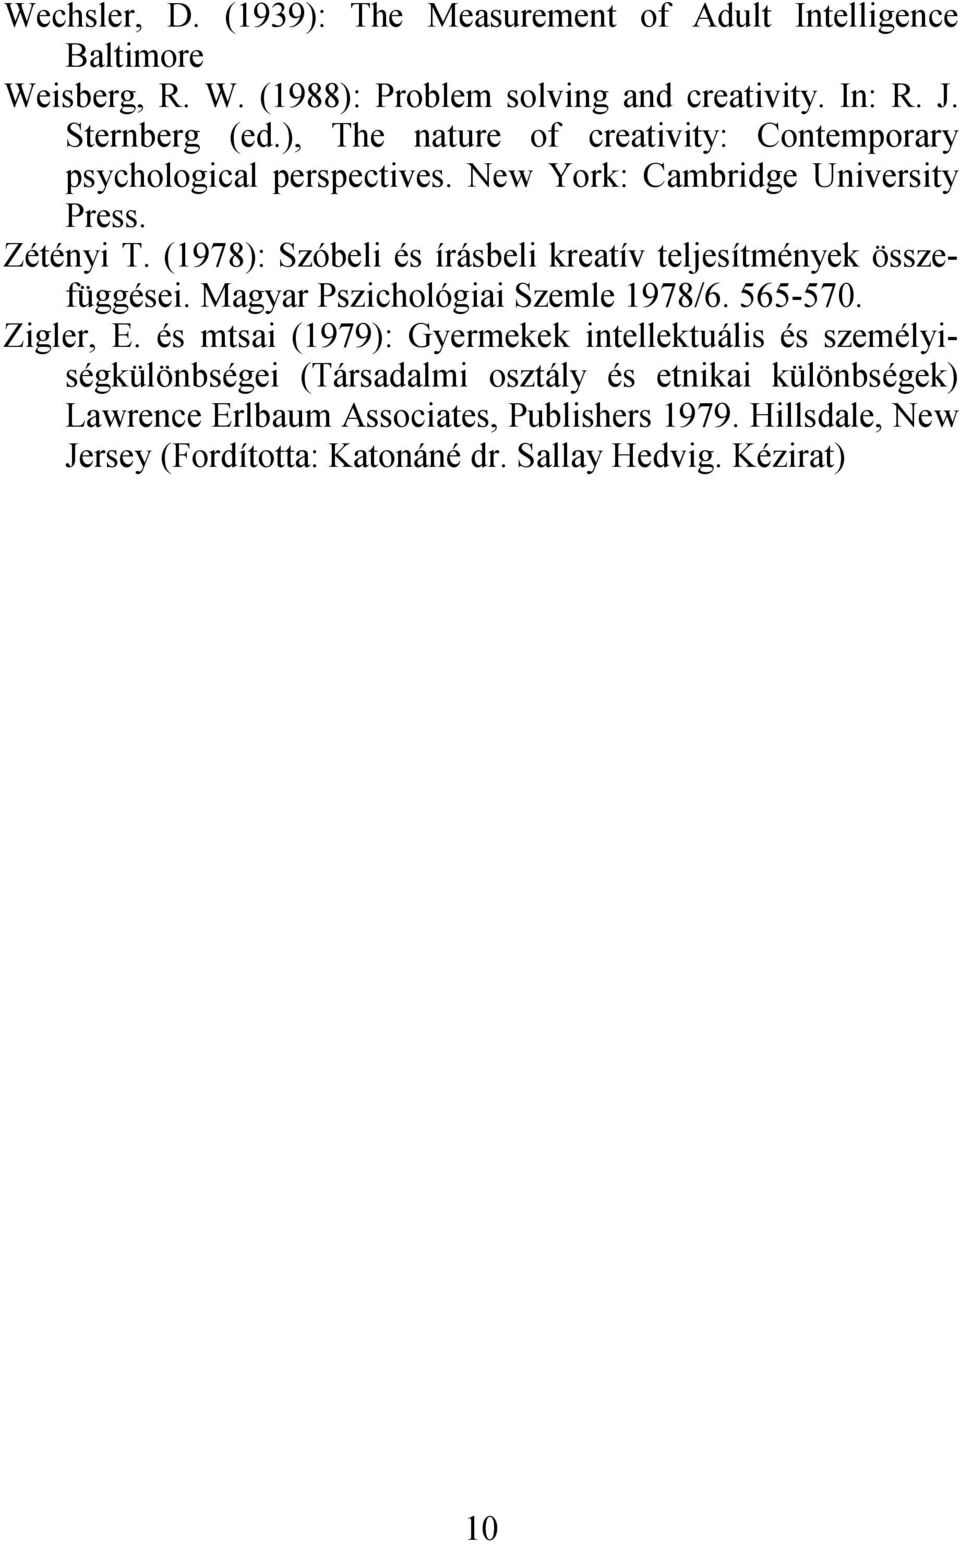 (1978): Szóbeli és írásbeli kreatív teljesítmények összefüggései. Magyar Pszichológiai Szemle 1978/6. 565-570. Zigler, E.